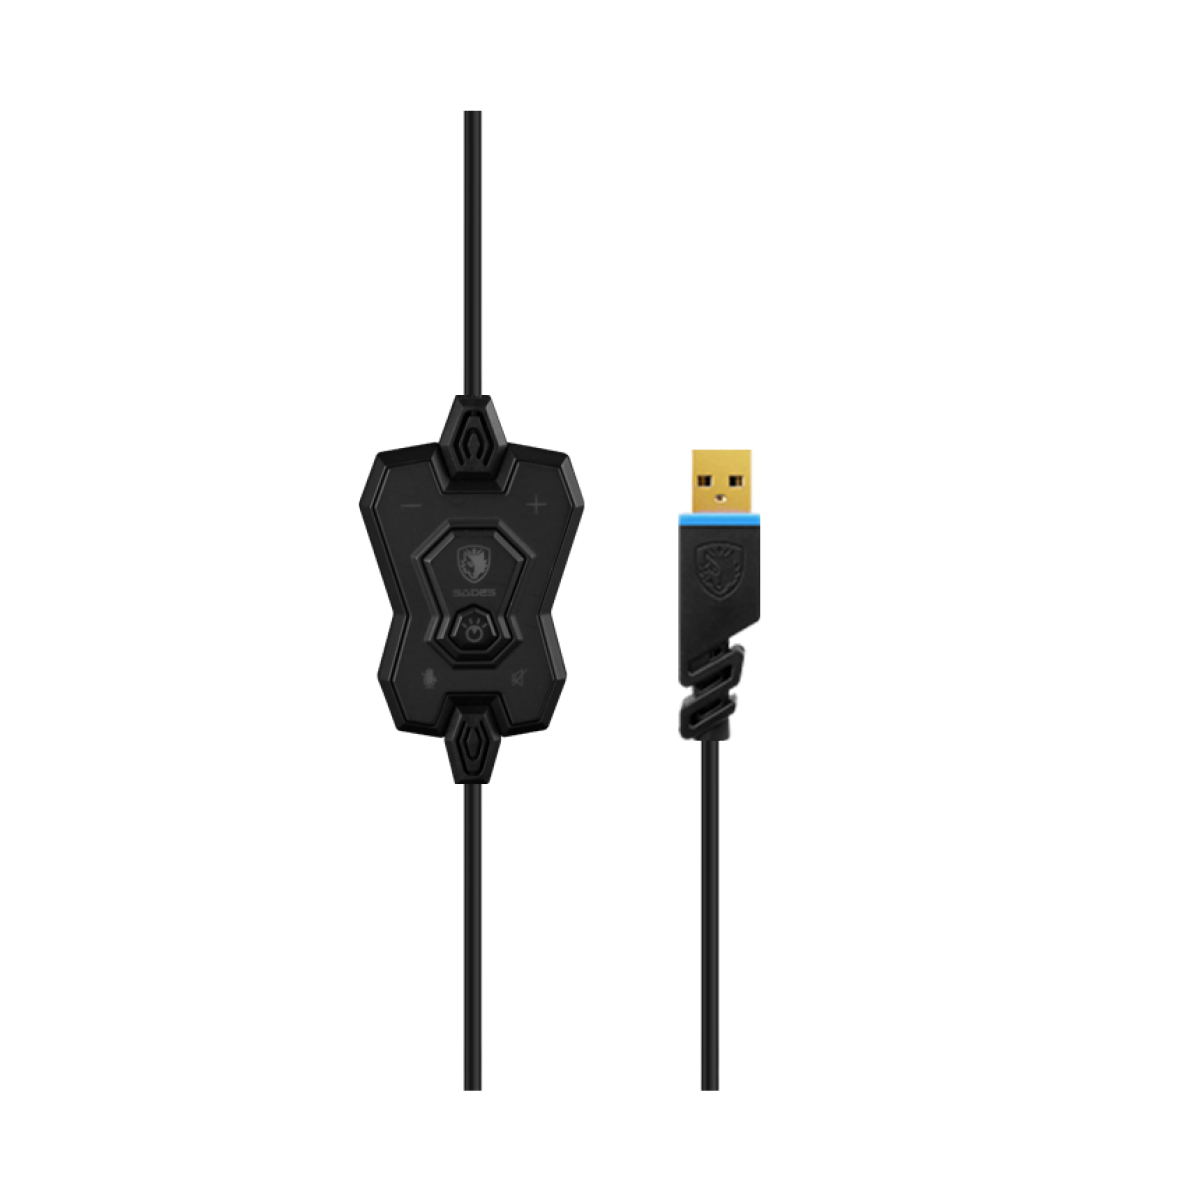 Headset Gamer Sades Sa-923 Hammer, 7.1 Surround, Black/Blue, Sa-923